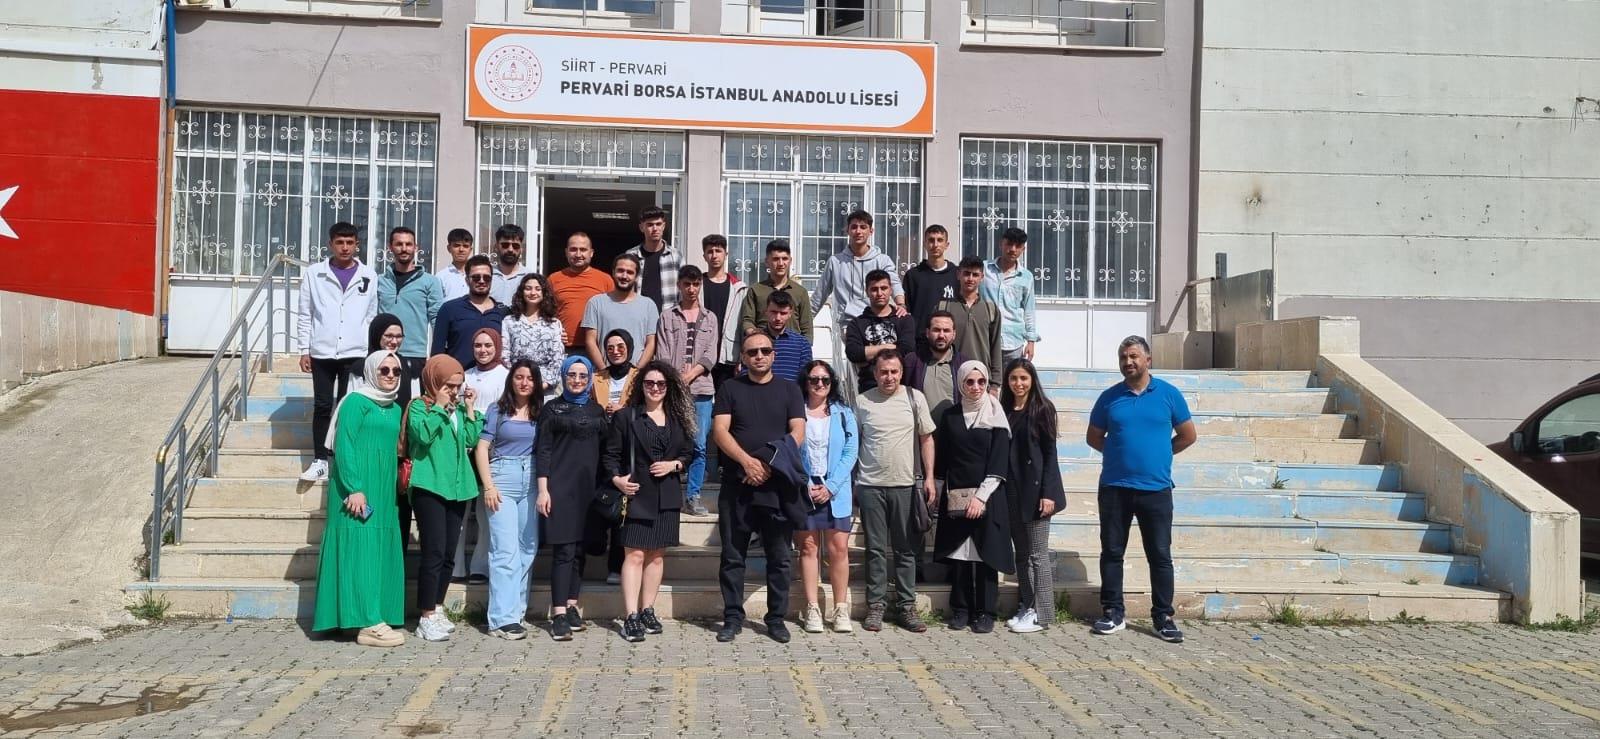 Siirt Üniversitesi-Pervari Borsa İstanbul Anadolu Lisesi Kariyer Konferansı